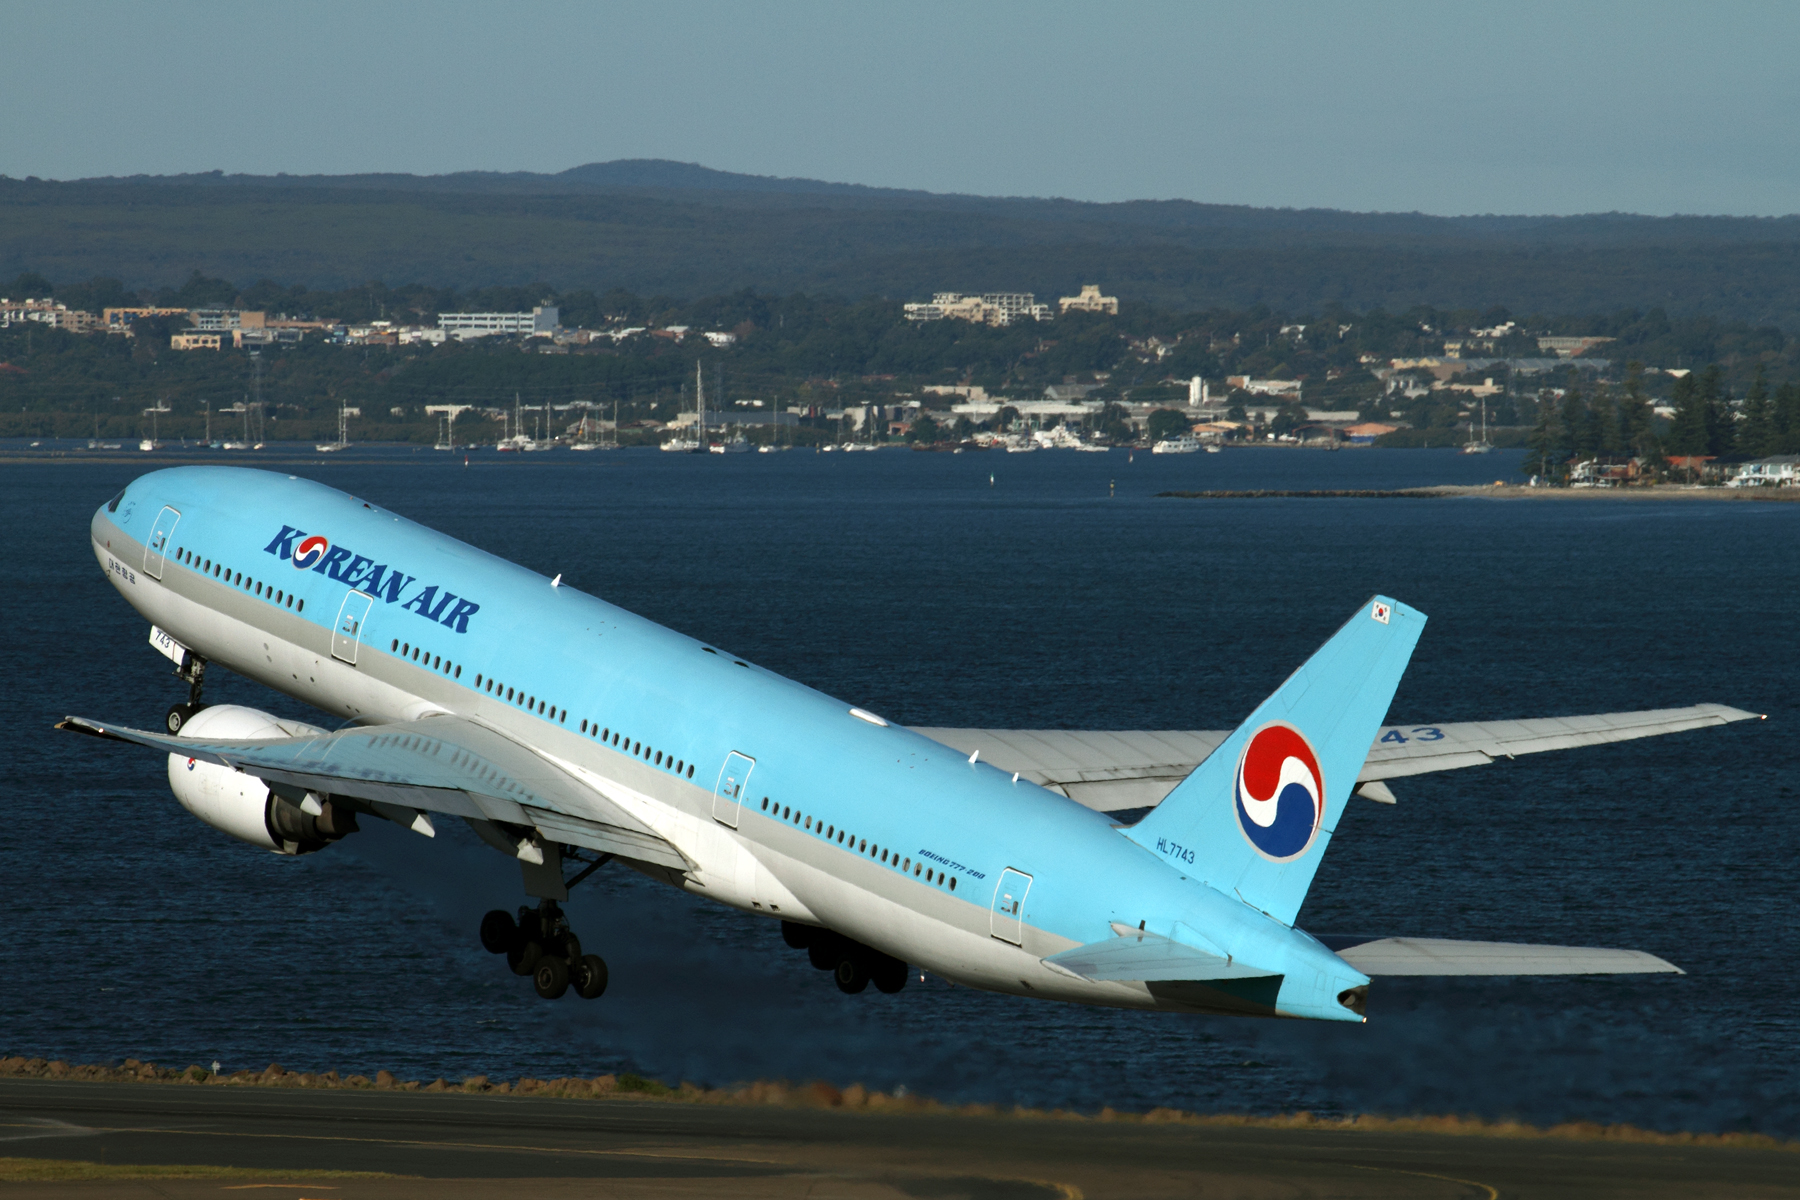 KOREAN AIR BOEING 777 200 SYD RF IMG_3392.jpg